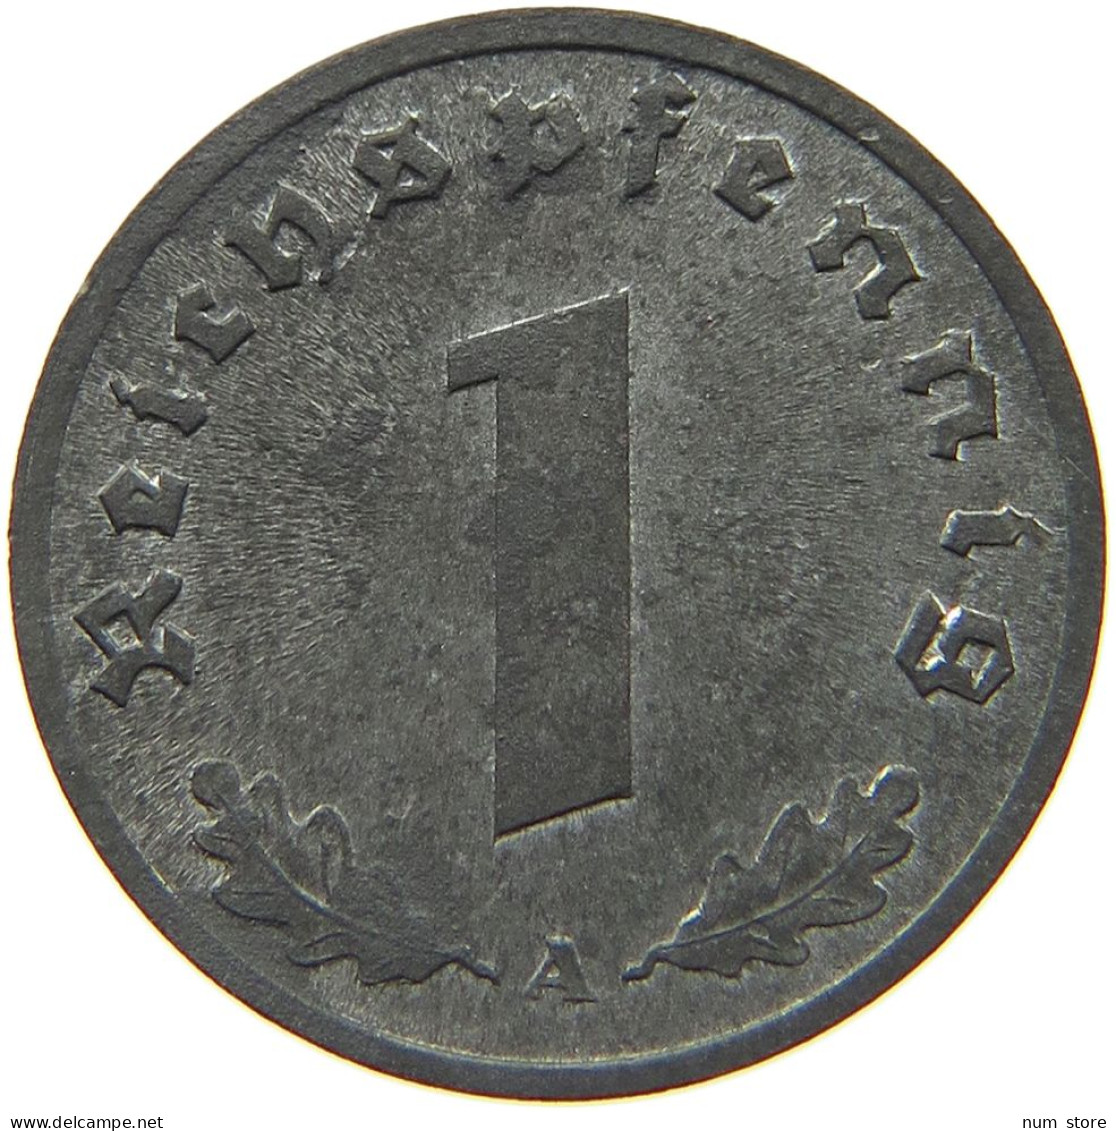 DRITTES REICH PFENNIG 1944 A  #MA 005842 - 1 Reichspfennig